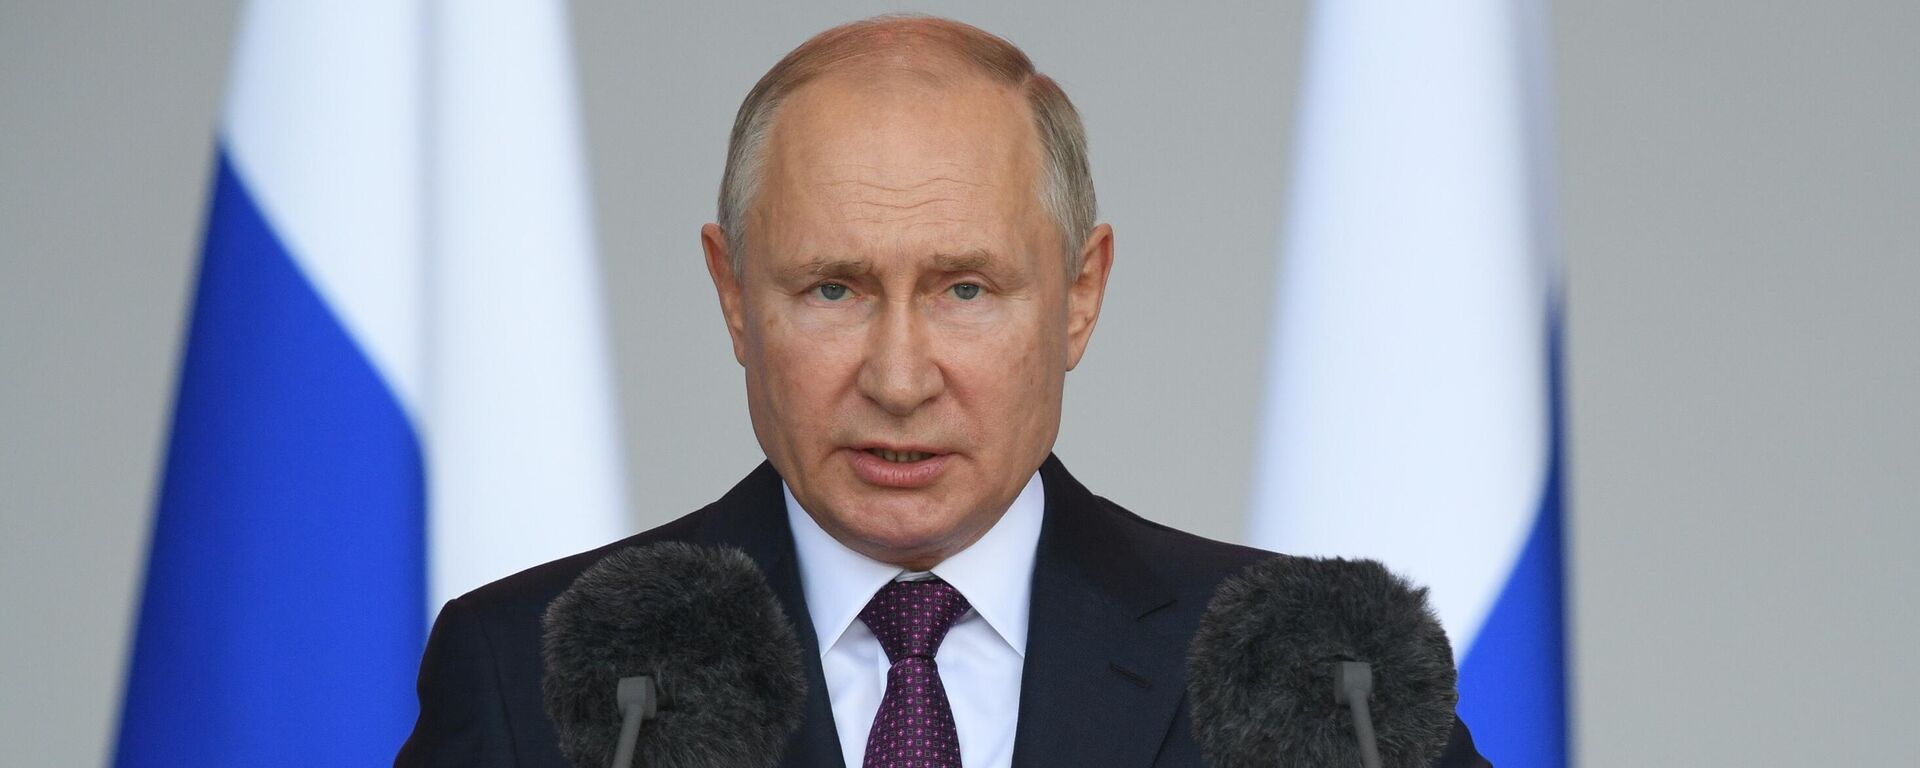 Президент РФ Владимир Путин - Sputnik Таджикистан, 1920, 17.09.2021